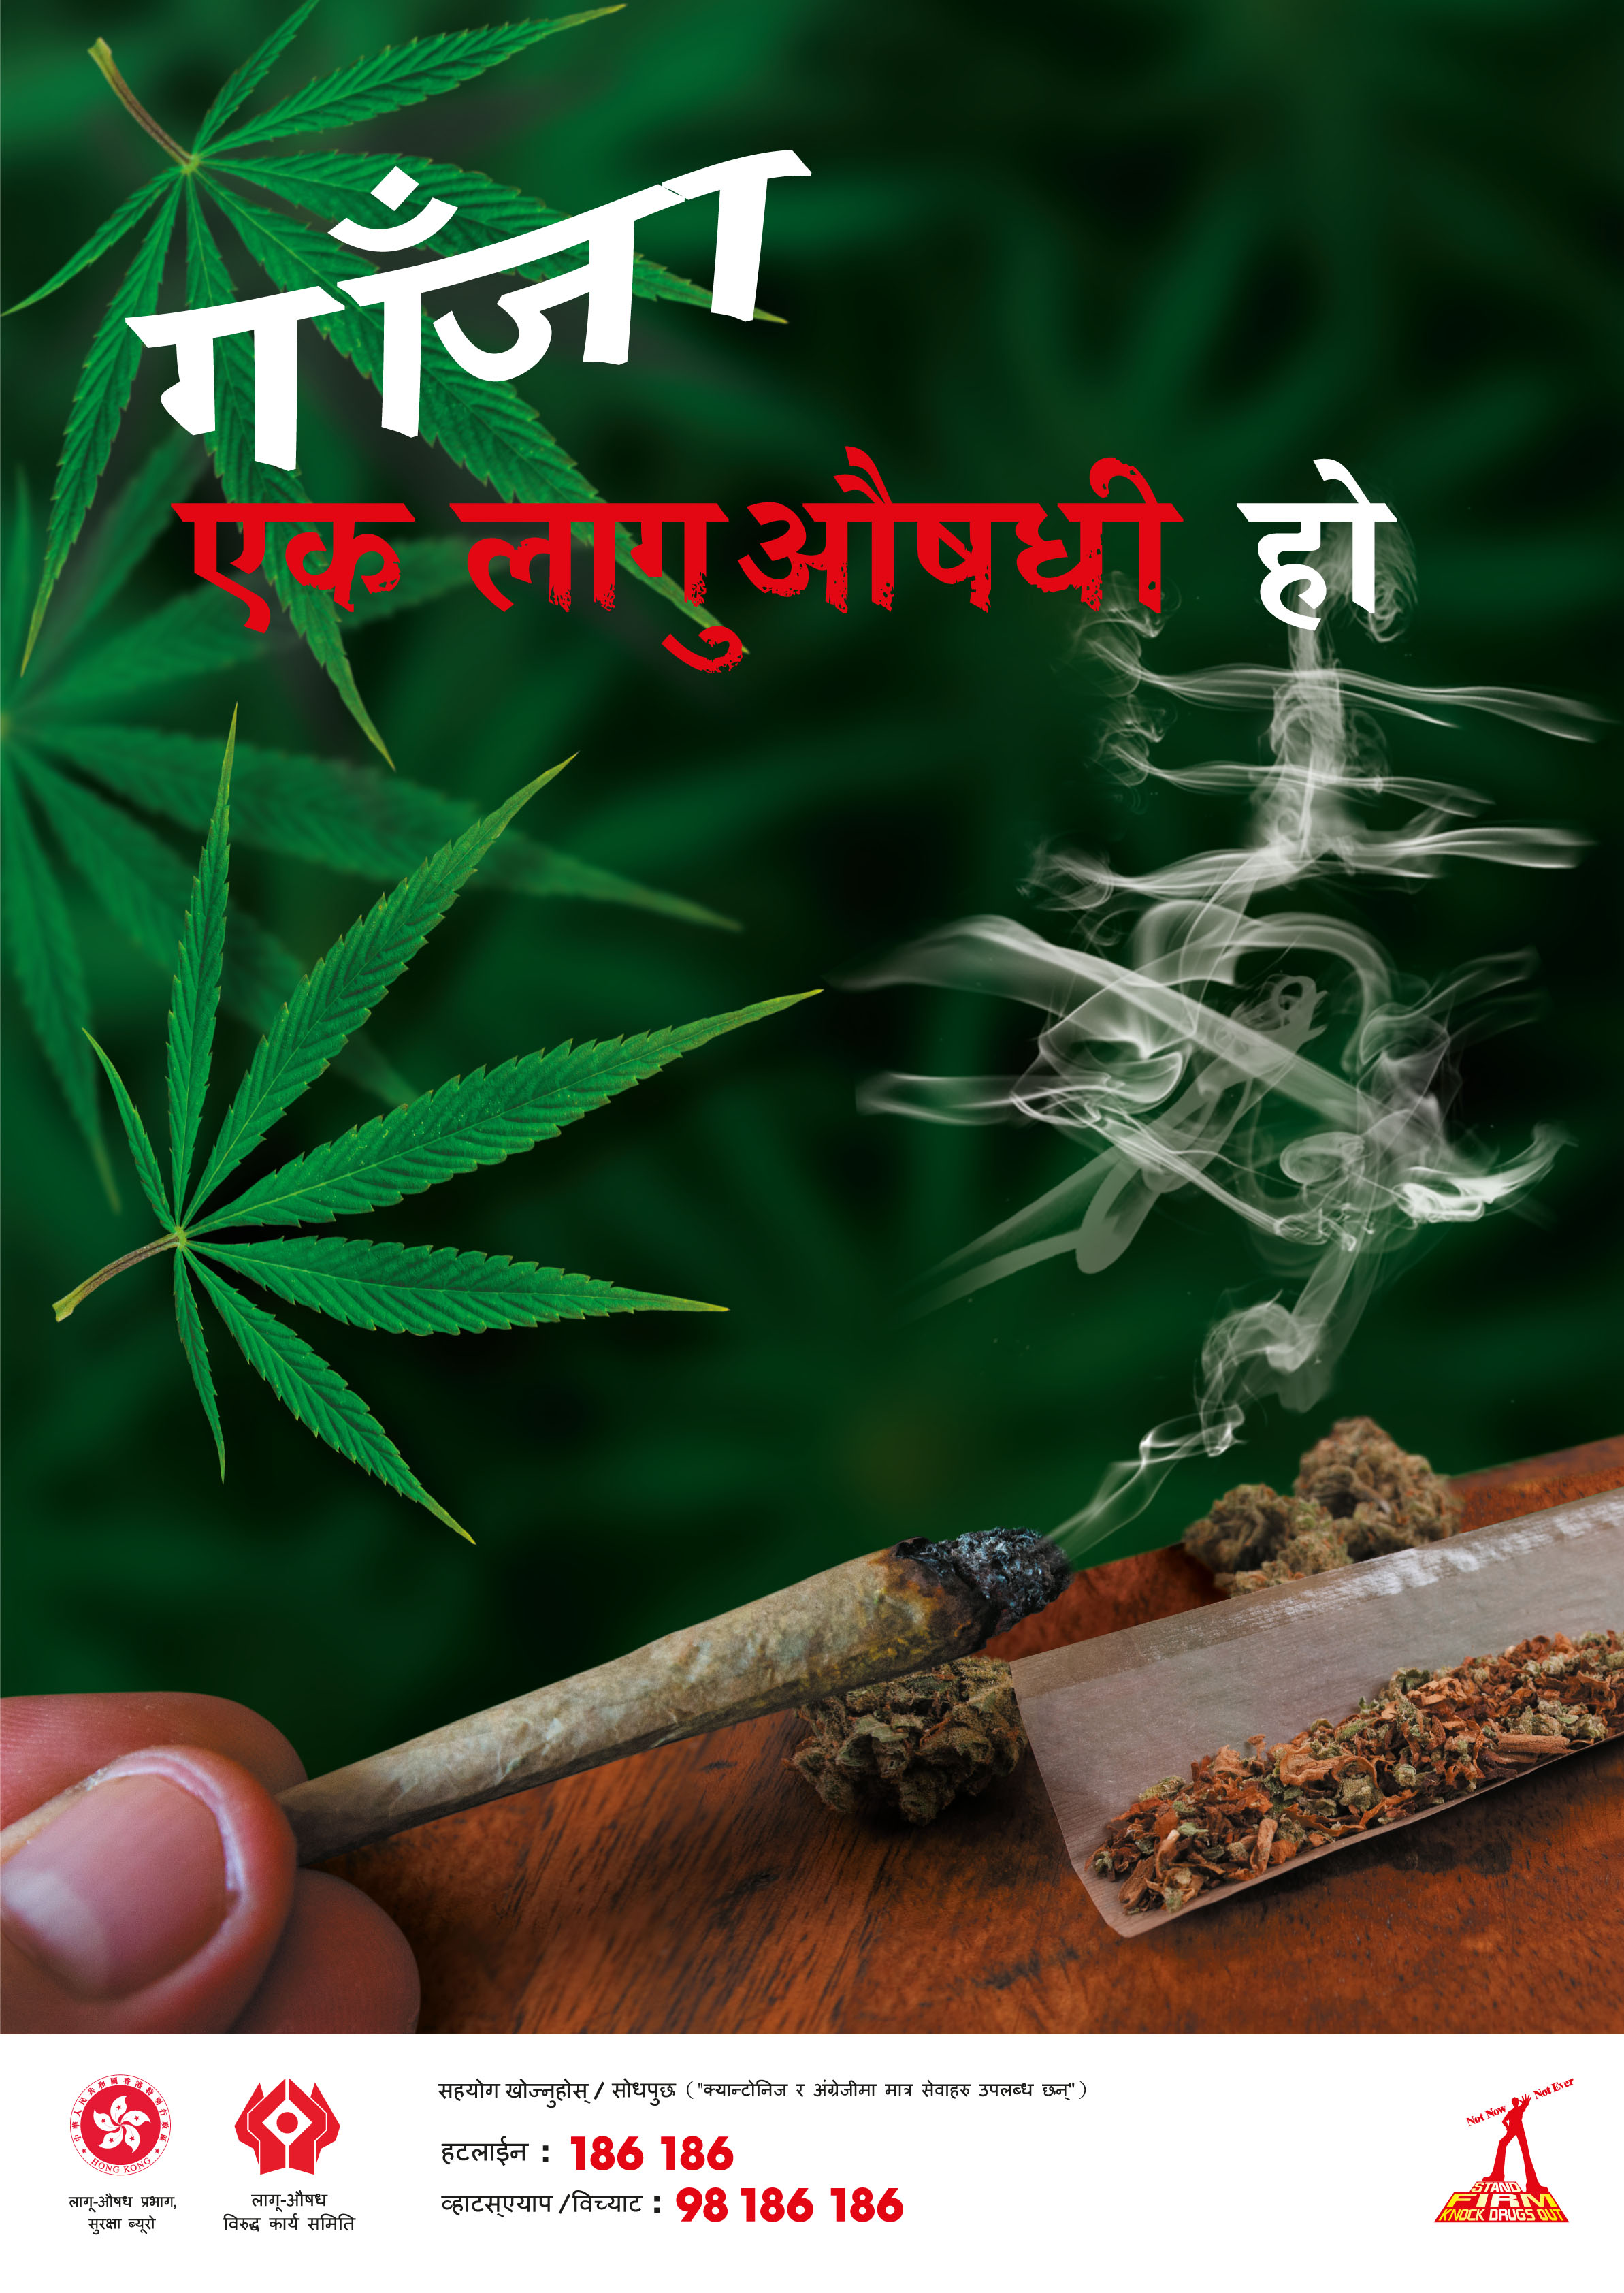 禁毒海報「 大麻係毒品 」－ 尼泊爾文版本